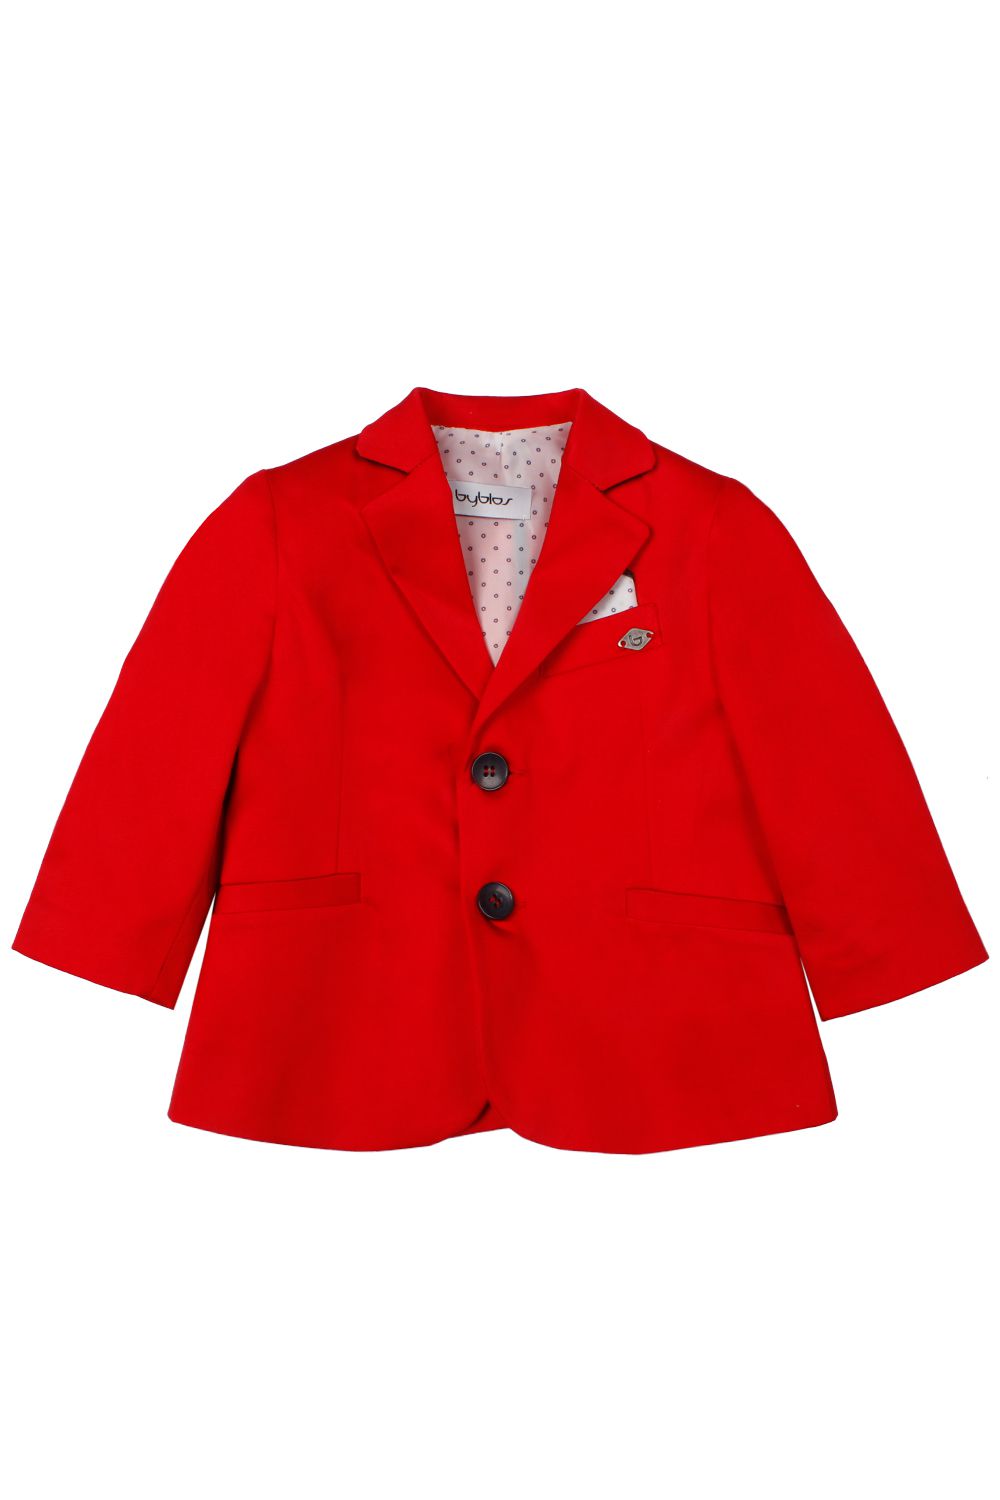 Пиджак Byblos, размер 80, цвет красный - фото 1